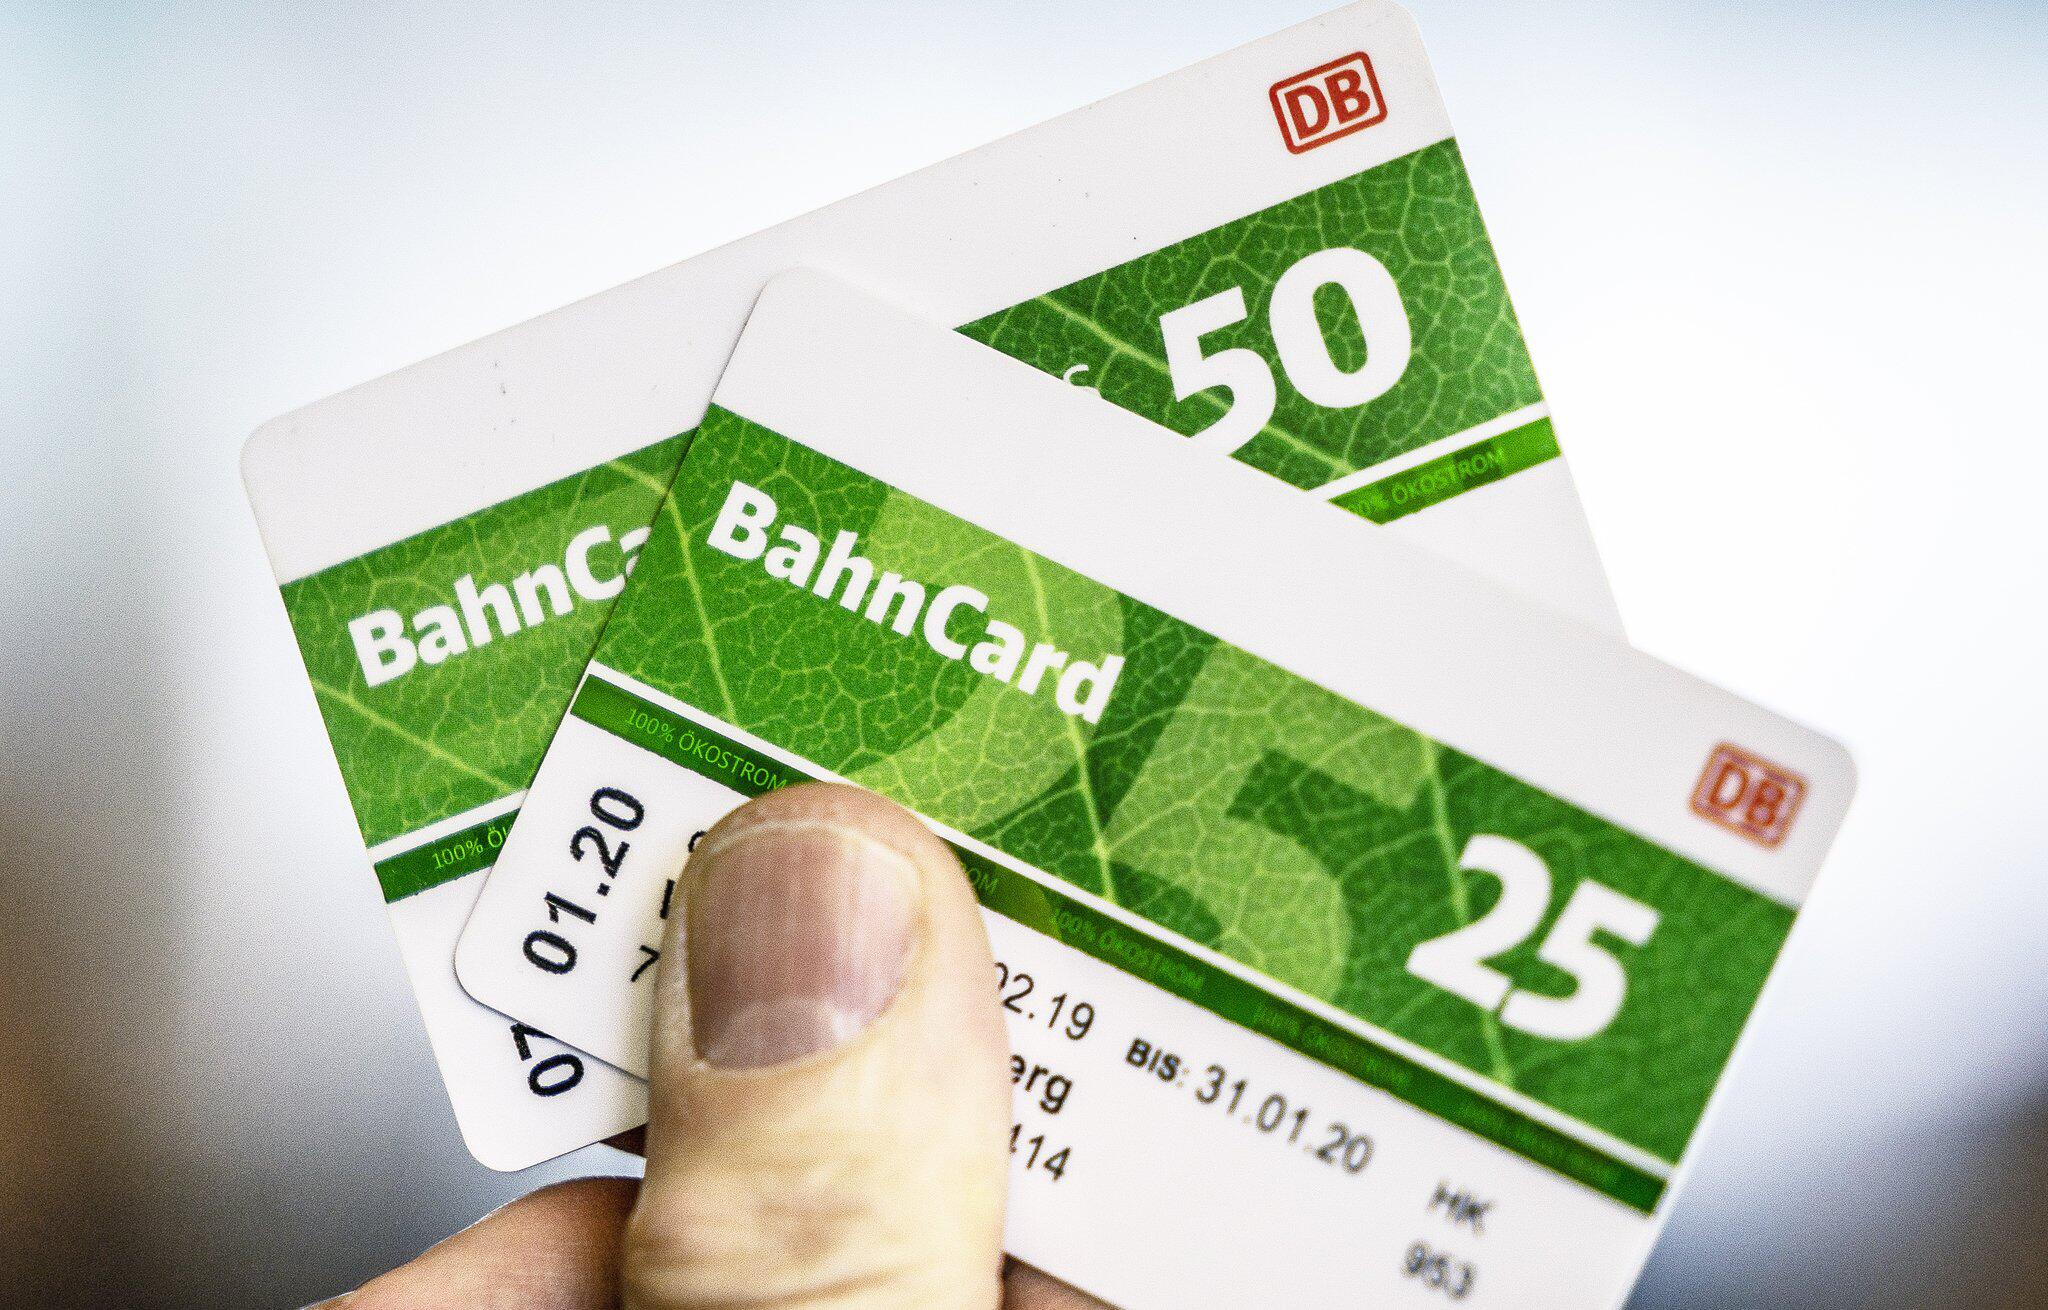 Bahncards 50 und 25 werden billiger WEB.DE